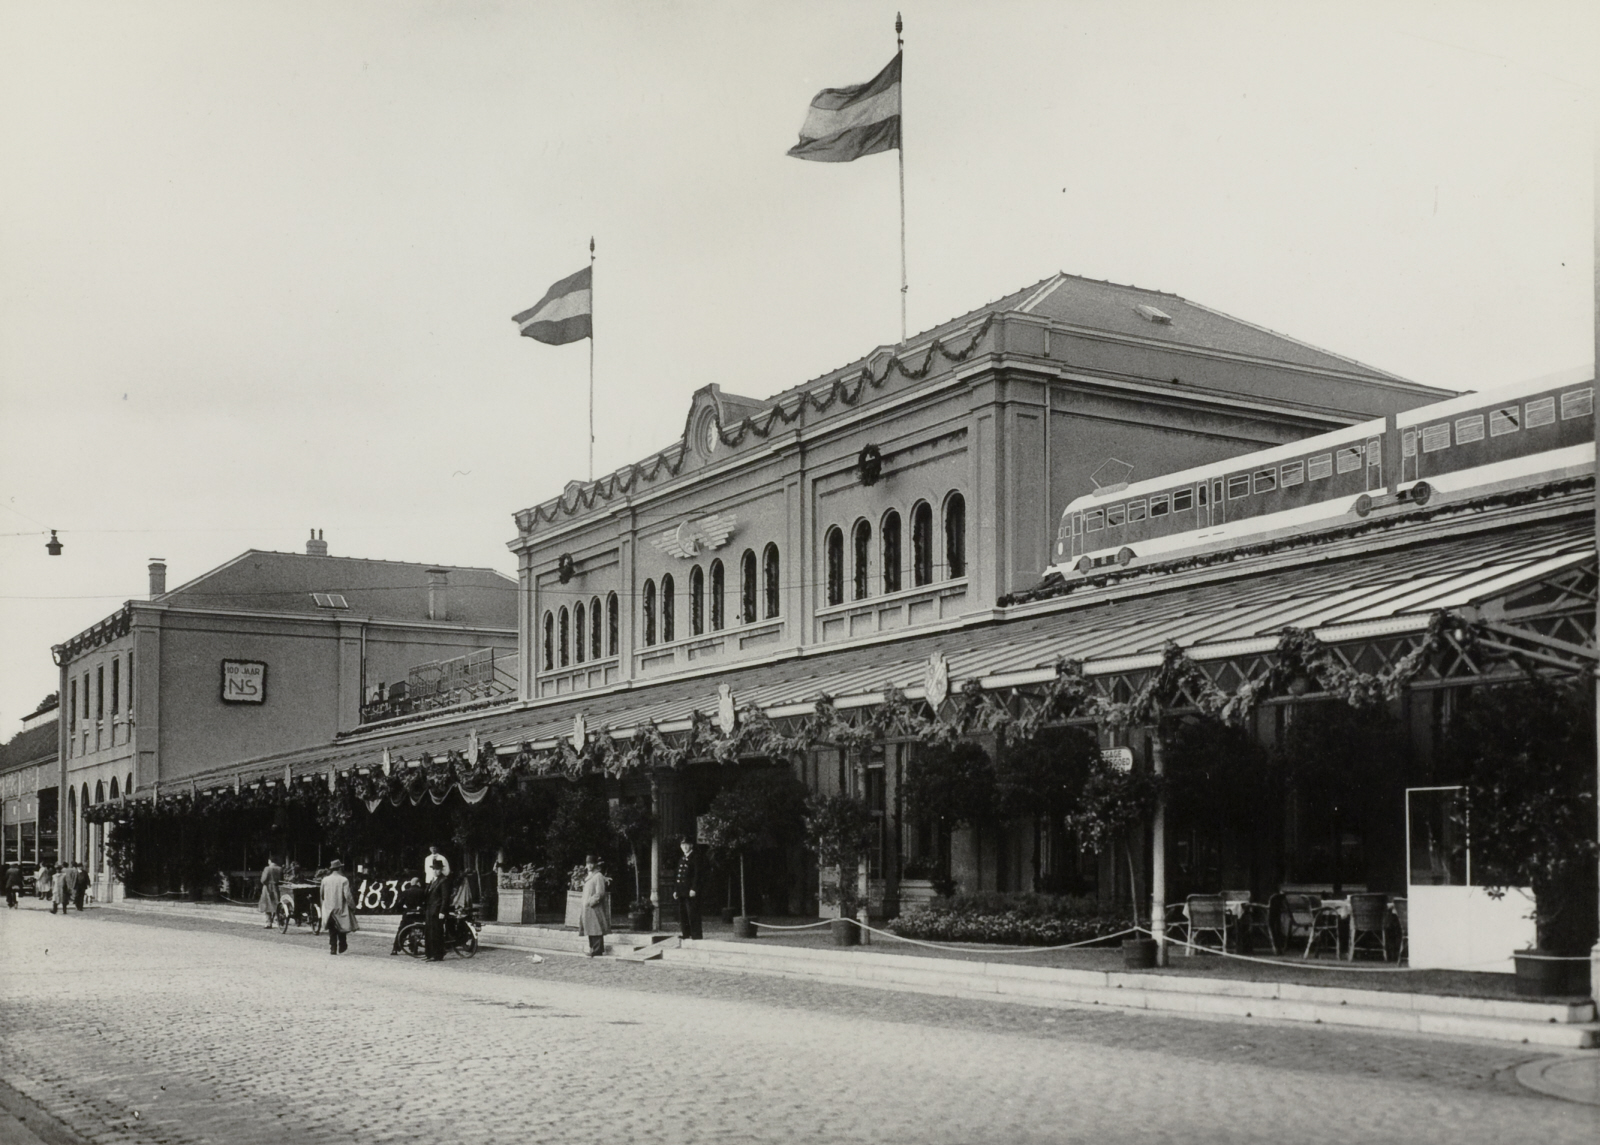 Versiering op het hoofdgebouw van het station van Leiden voor het eeuwfeest